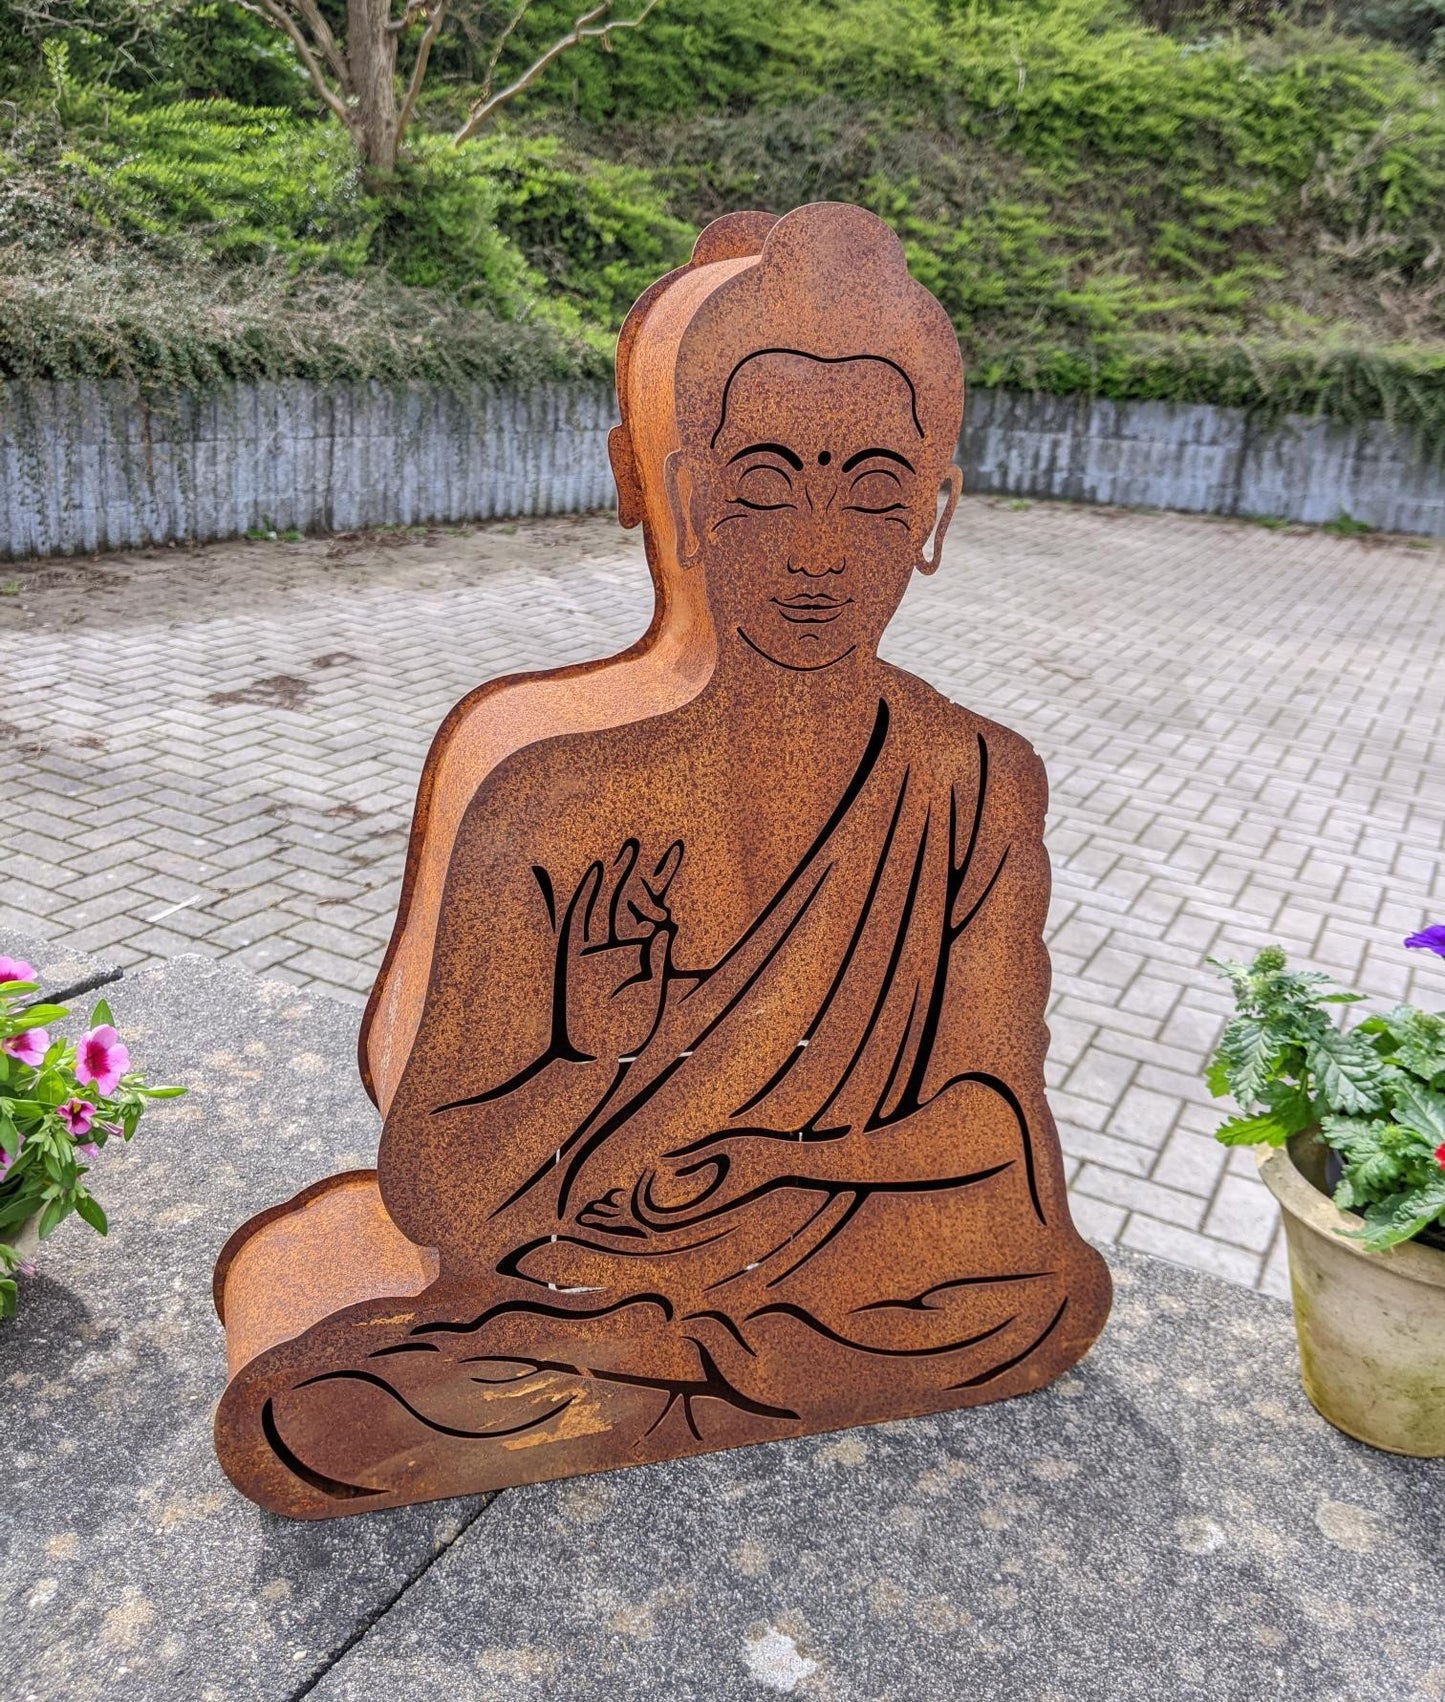 NEU !! 3 D Buddha ca. 50 cm hoch aus Metall in Edelrost Beleuchtbar Dekoration Skulptur Figur Buddhismus Indien Religion